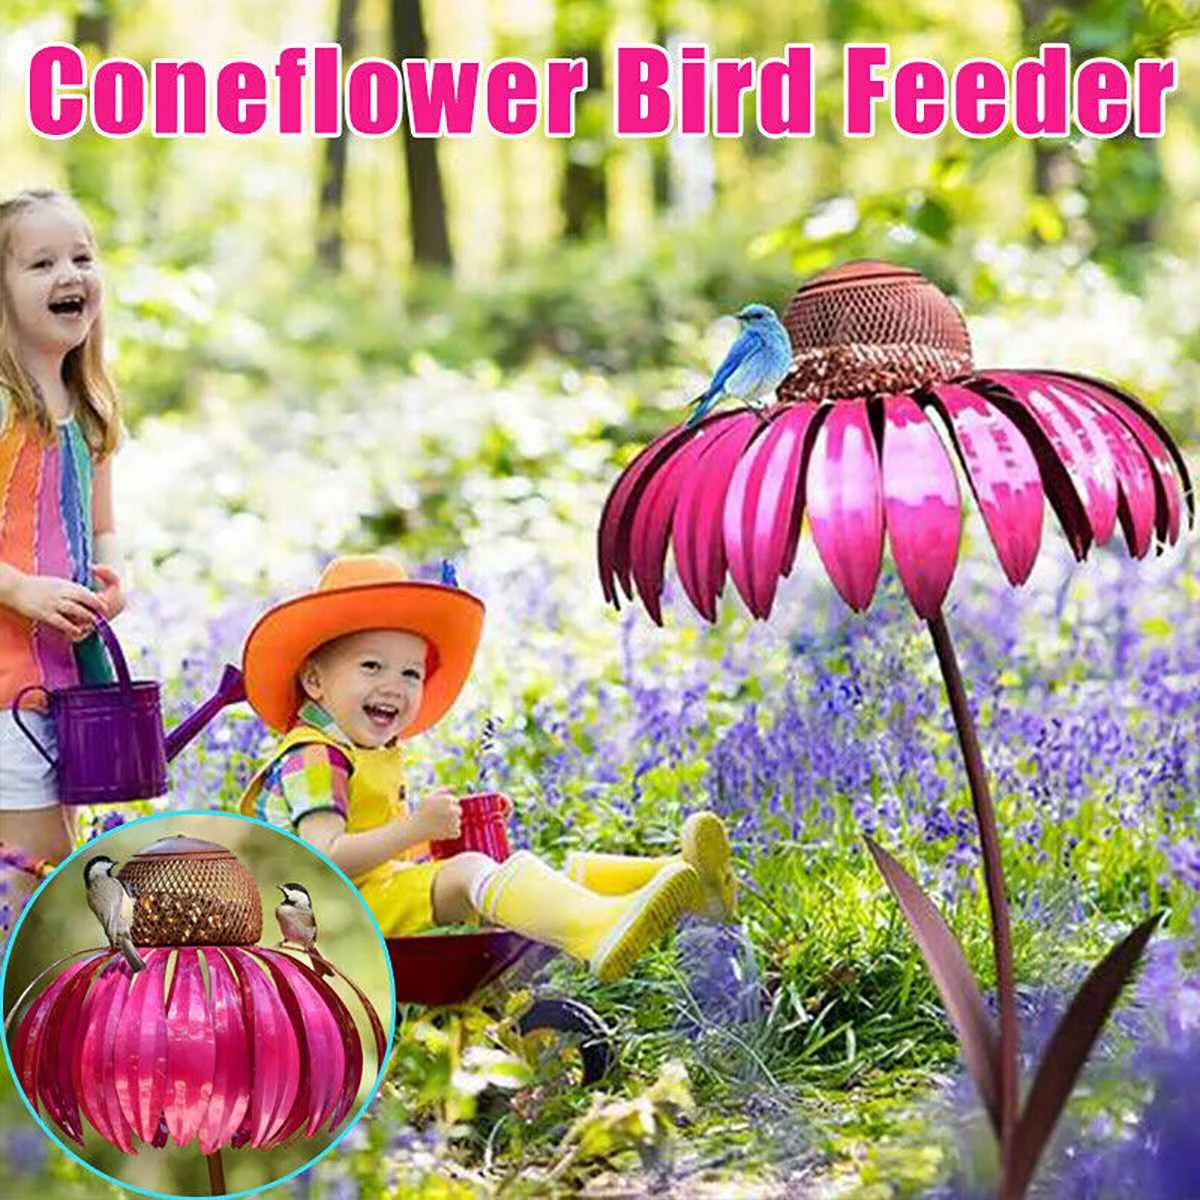 

Садовая кормушка для птиц Sense Pink Coneflower, кормушка для птиц, кормушка для диких птиц с подставкой, уличный садовый декор, 3 цвета